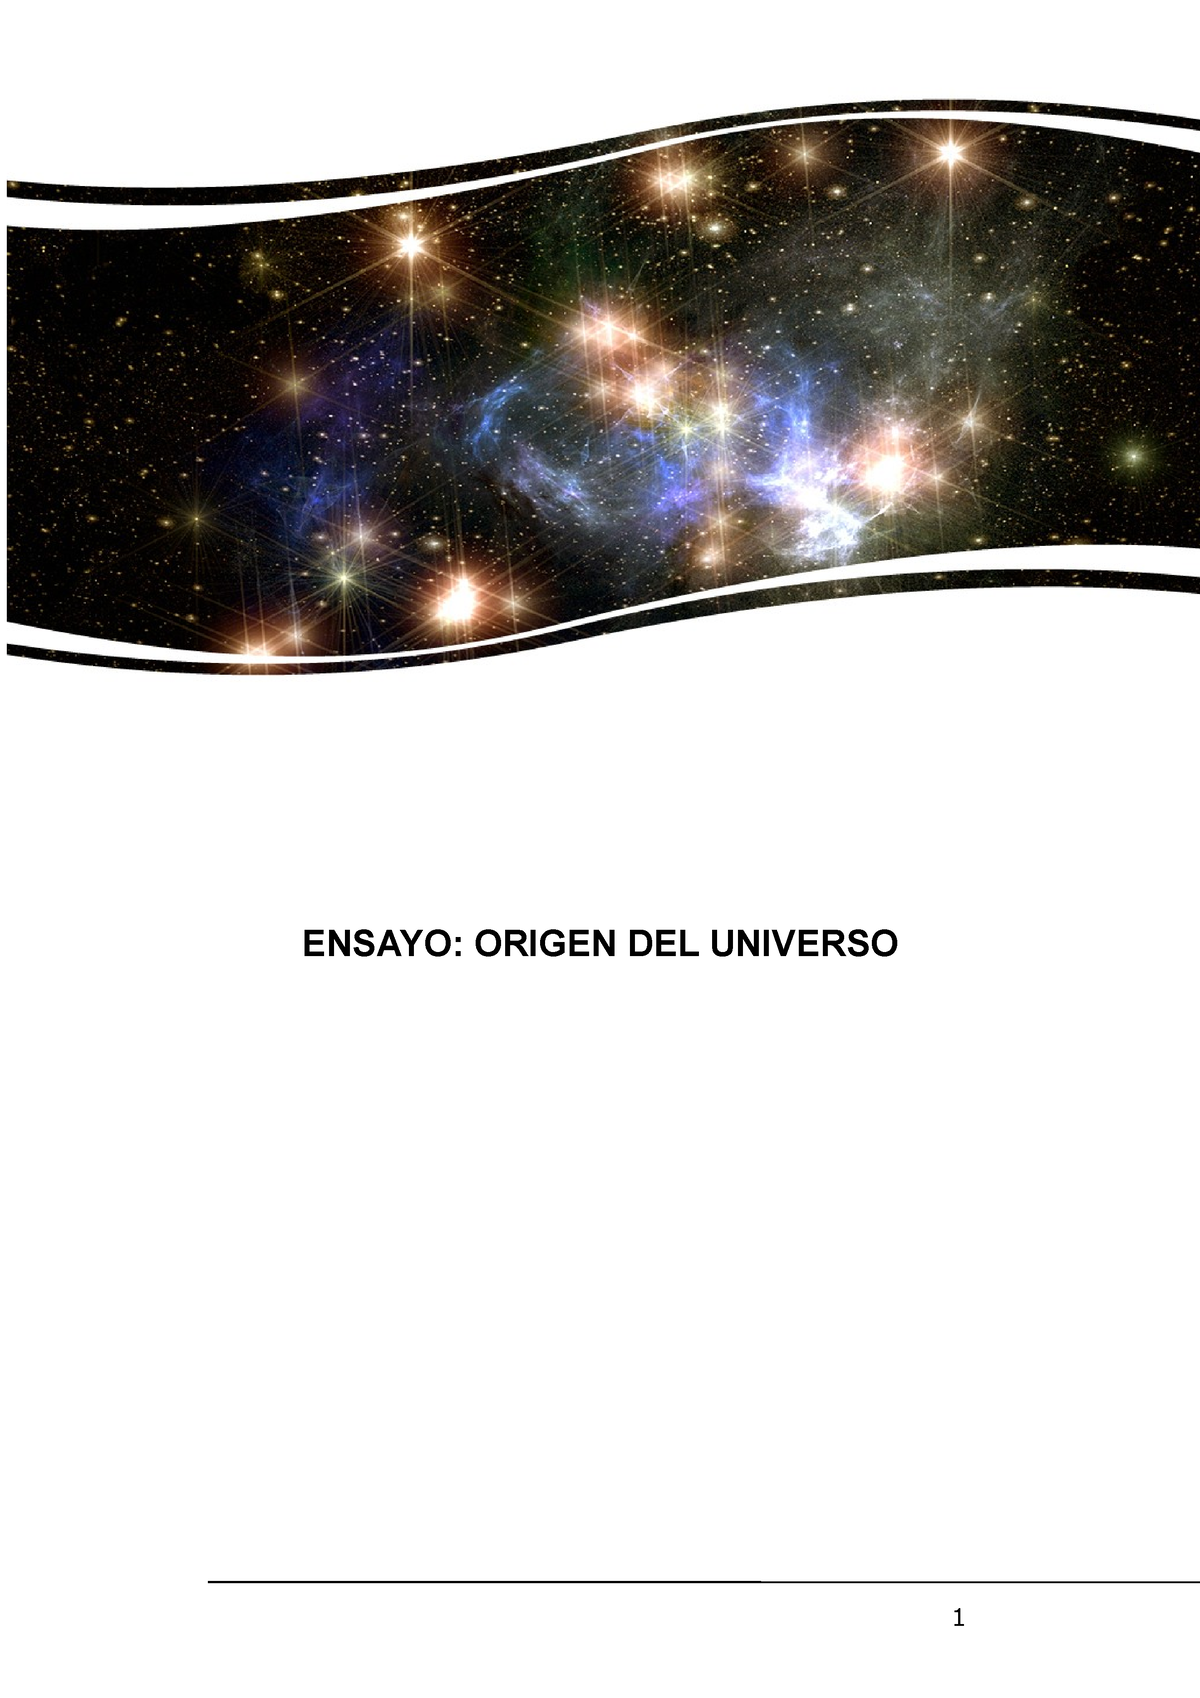 Origen Del Universo Ensayo Argumentativo De La TeorÍa Del Big Bang